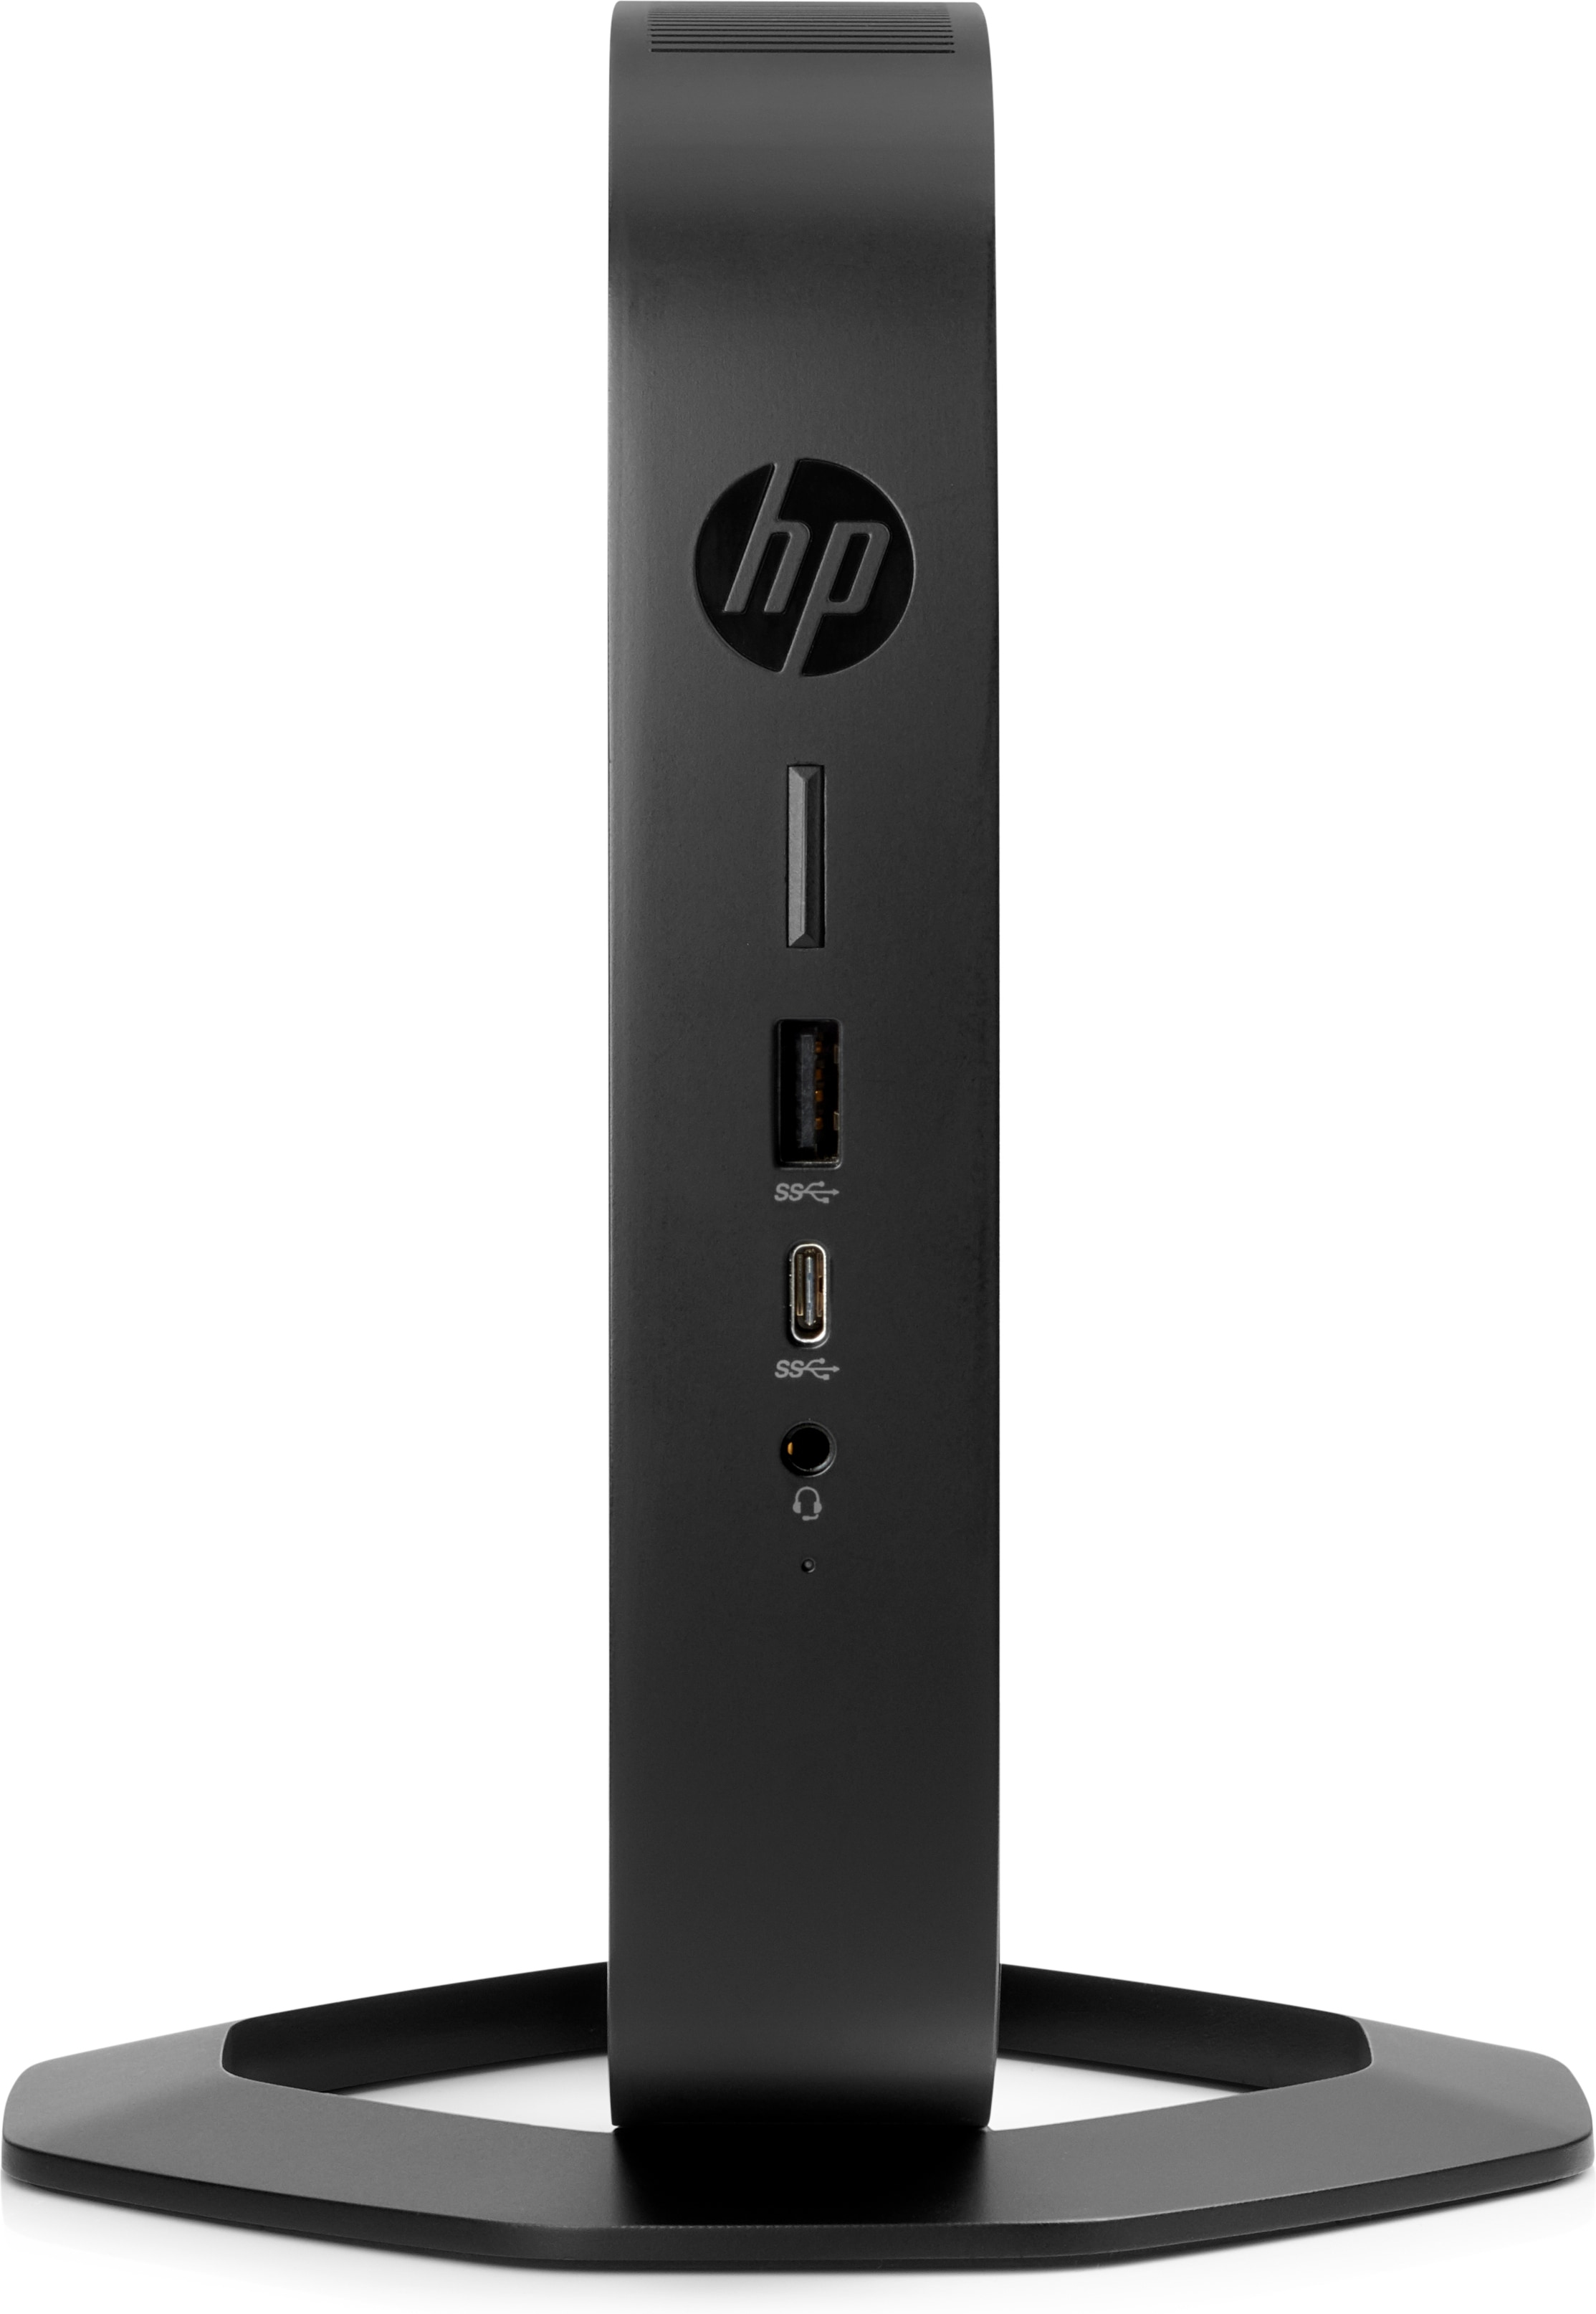 HP t540 1,5 GHz R1305G Windows 10 IoT Enterprise 1,4 kg Noir